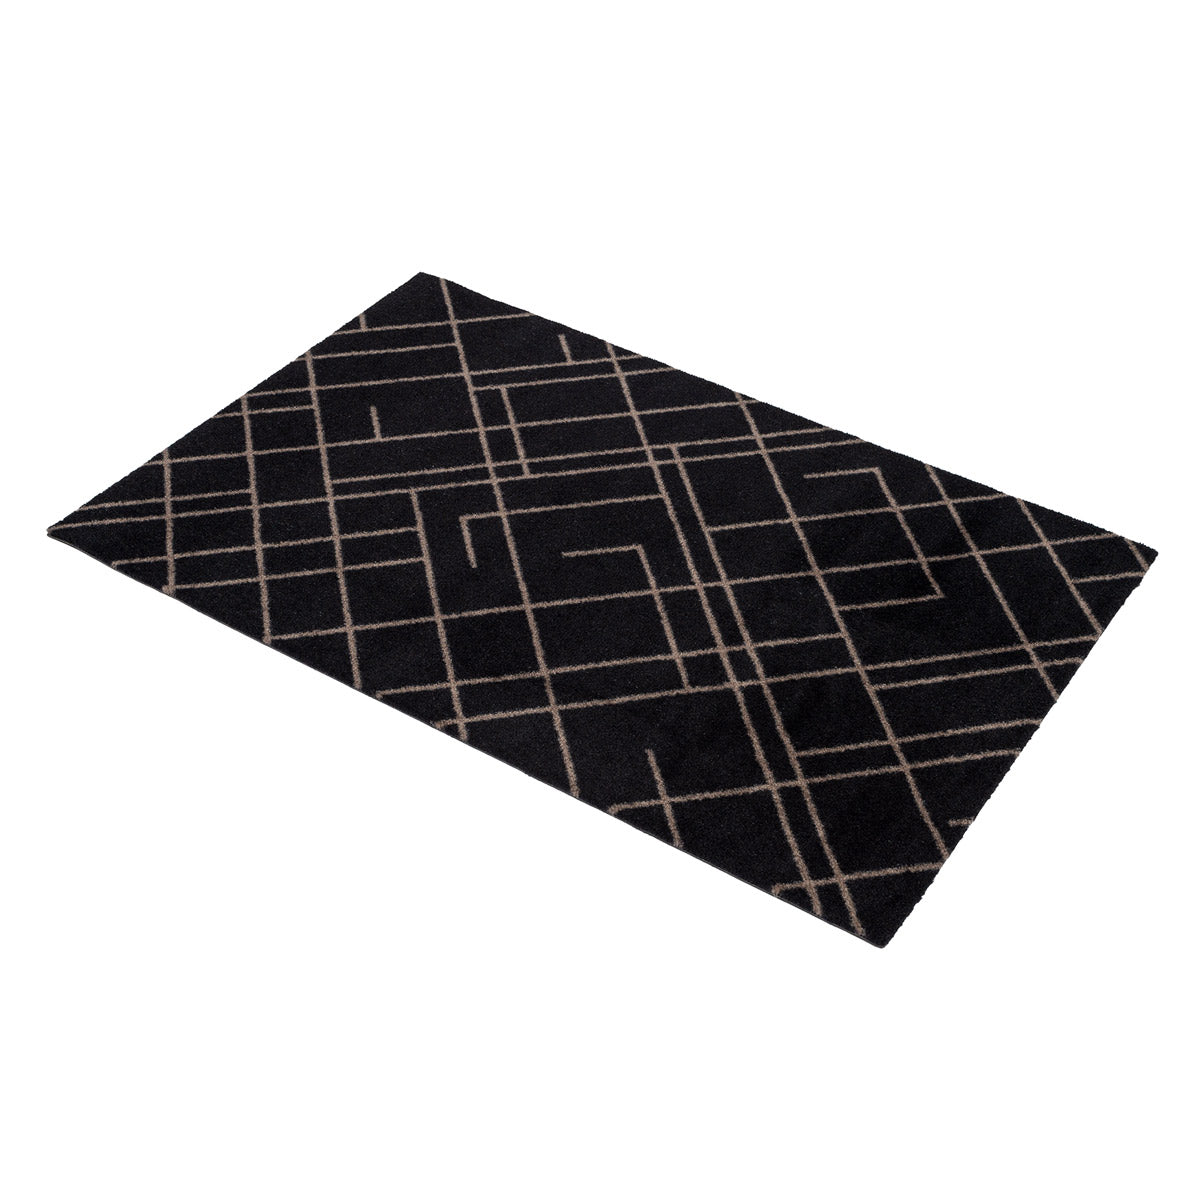 Golvmatta 60 x 90 cm - linjer/sand svart